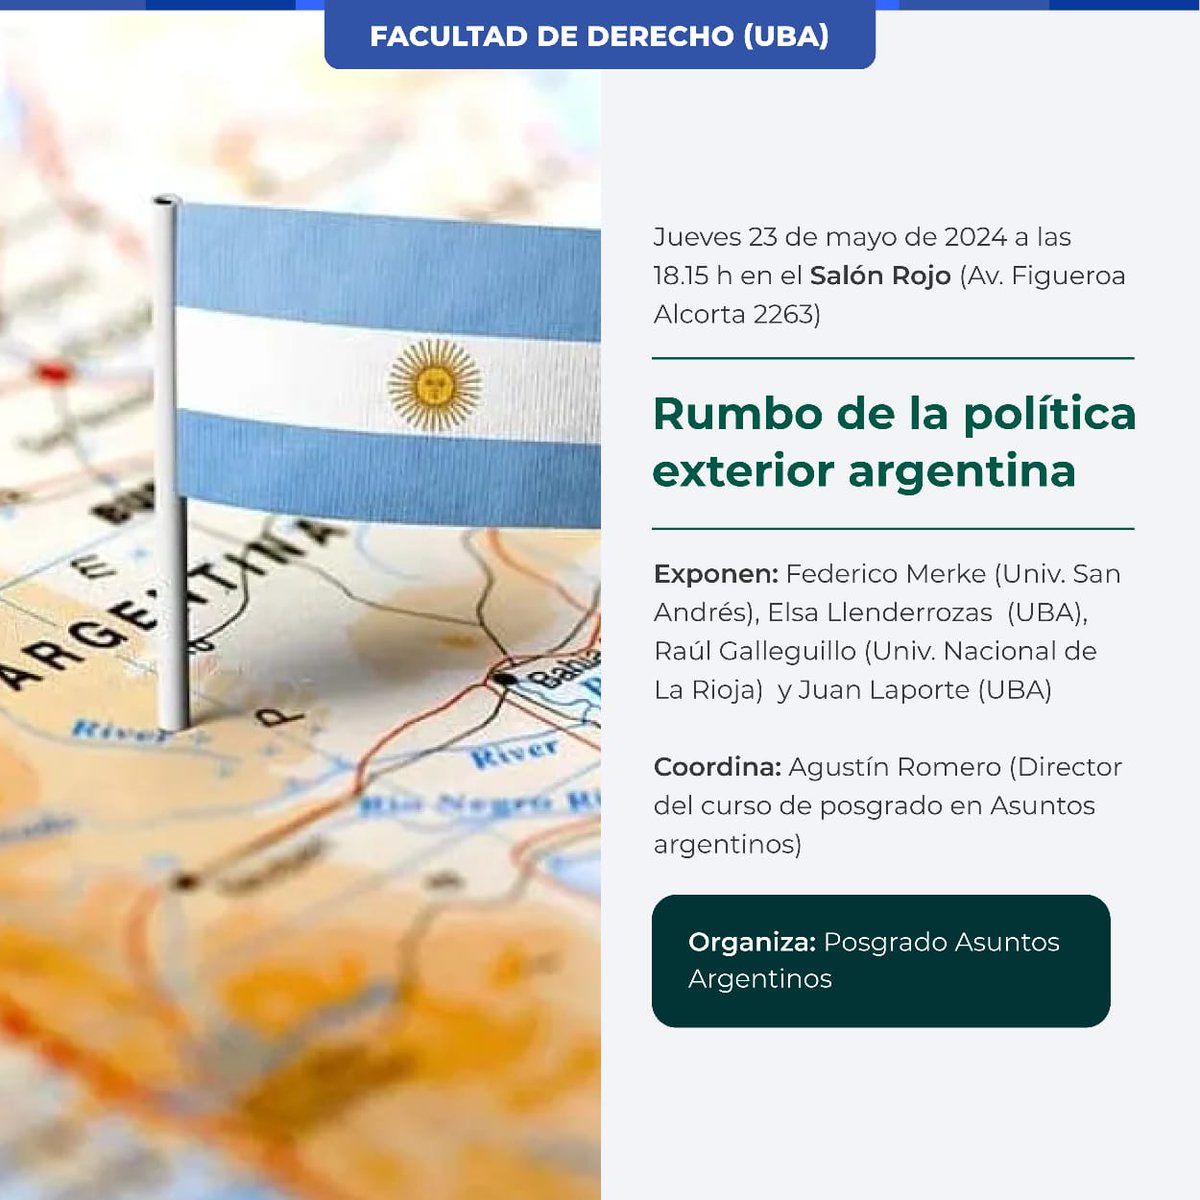 Conferencia 'Rumbo de la política exterior argentina' 🗺️ Este jueves 23, a las 18:15 en el Salón Rojo de @DerechoUBA. Exponen: Federico Merke (UdeSA), @ElsaLlender (UBA), Raúl Galleguillo (UNLR) y @LaporteJP (UBA). Coordina: @tunyromero +Info: derecho.uba.ar/institucional/…